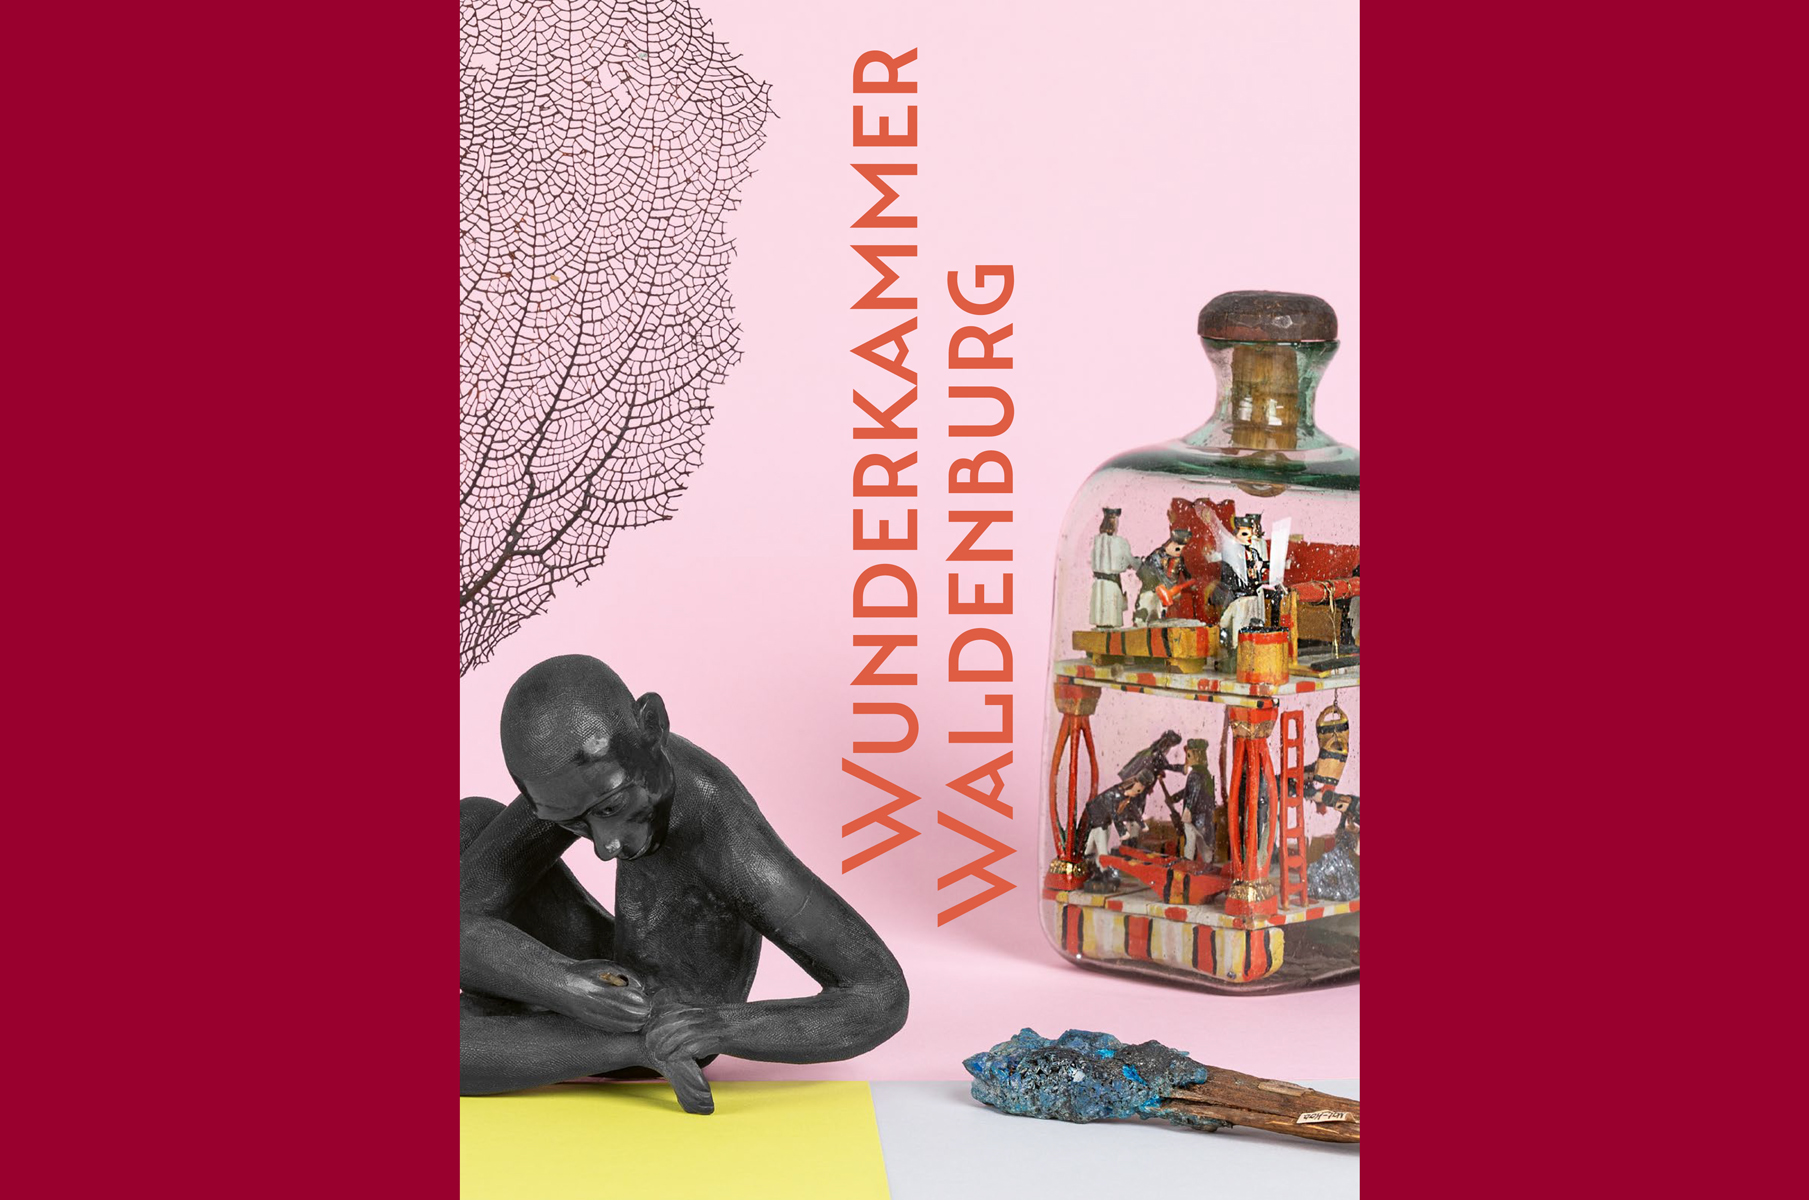 Auf dem Cover des Buches sind vier unterschiedliche Objekte aus dem Naturalienkabinett Waldenburg zu sehen, mittig steht der Buchtitel "Wunderkammer Waldenburg".